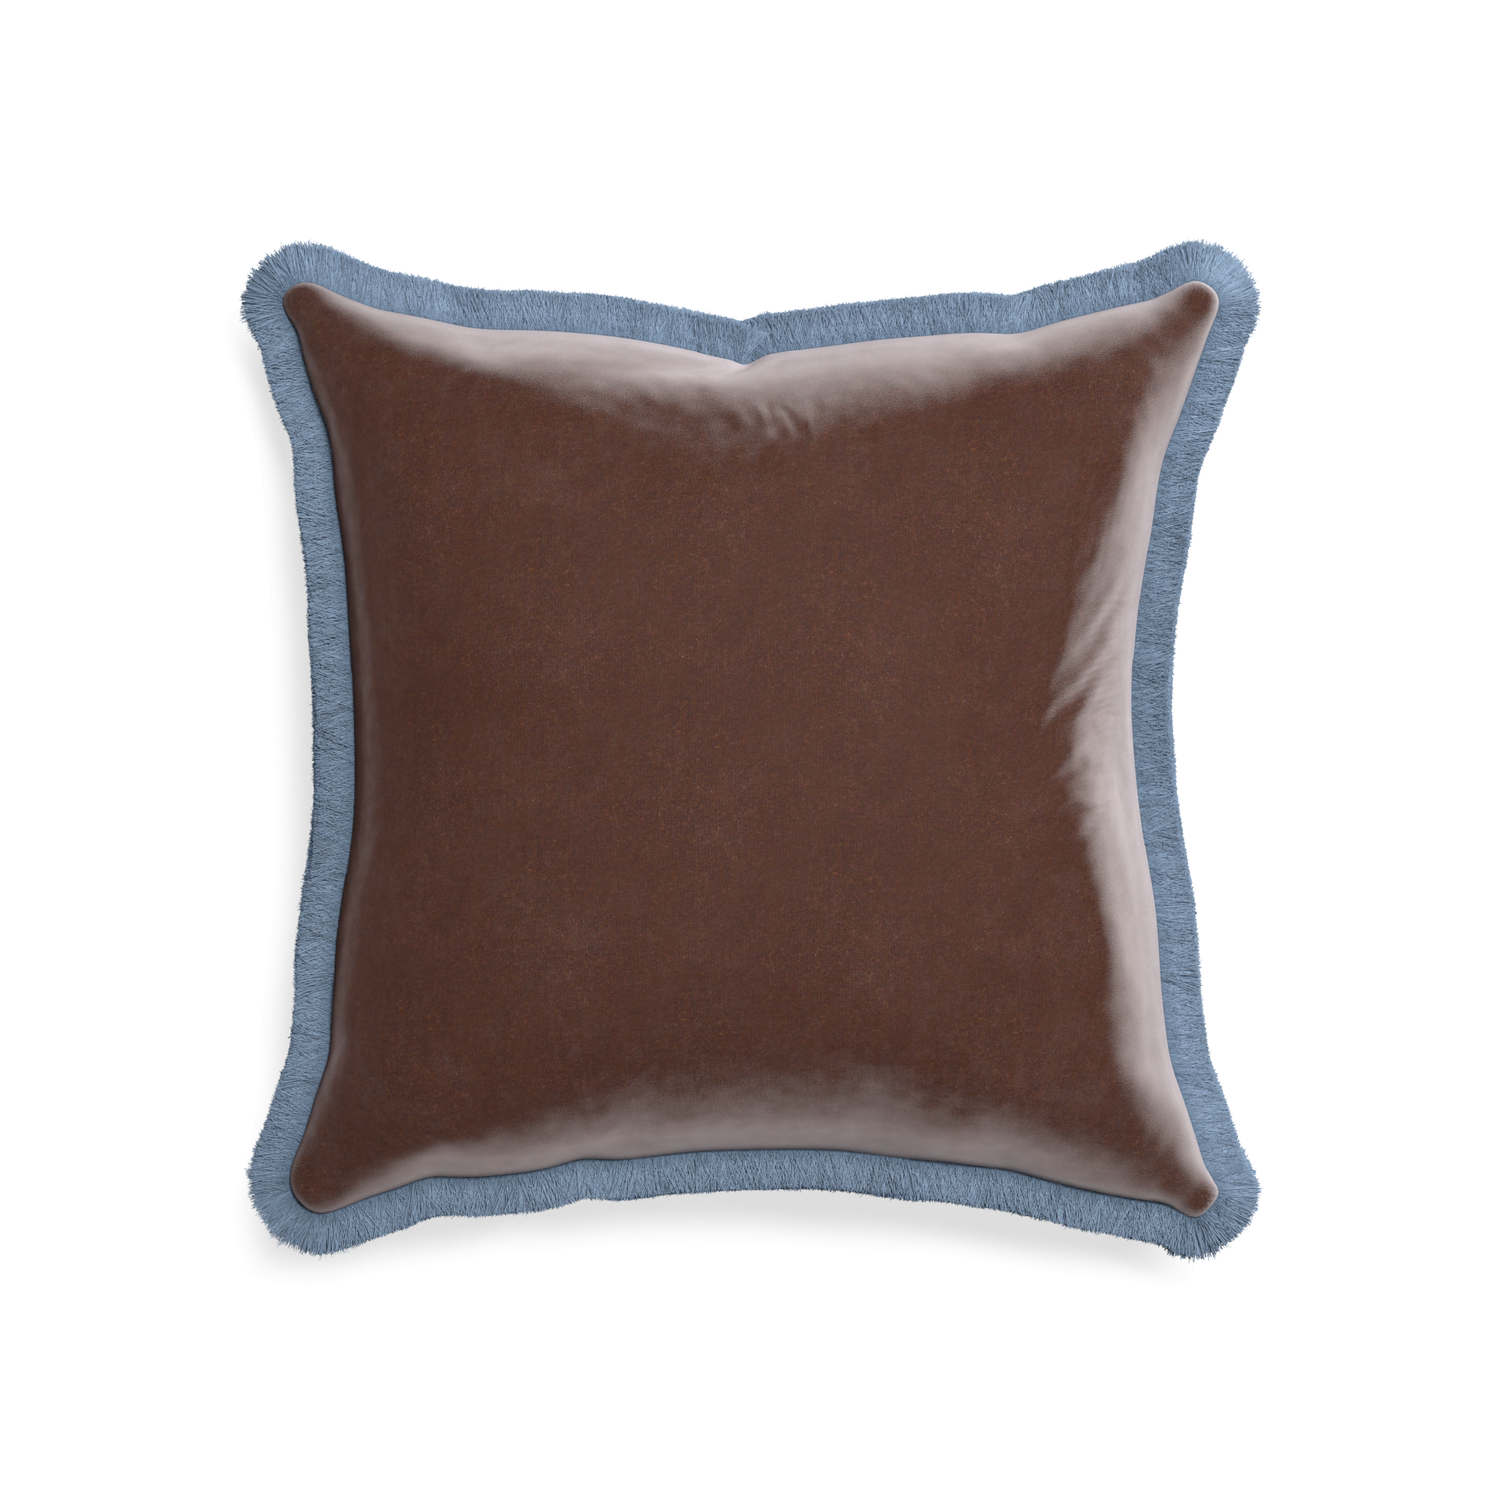 20-square walnut velvet custom pillow with sky fringe on white background